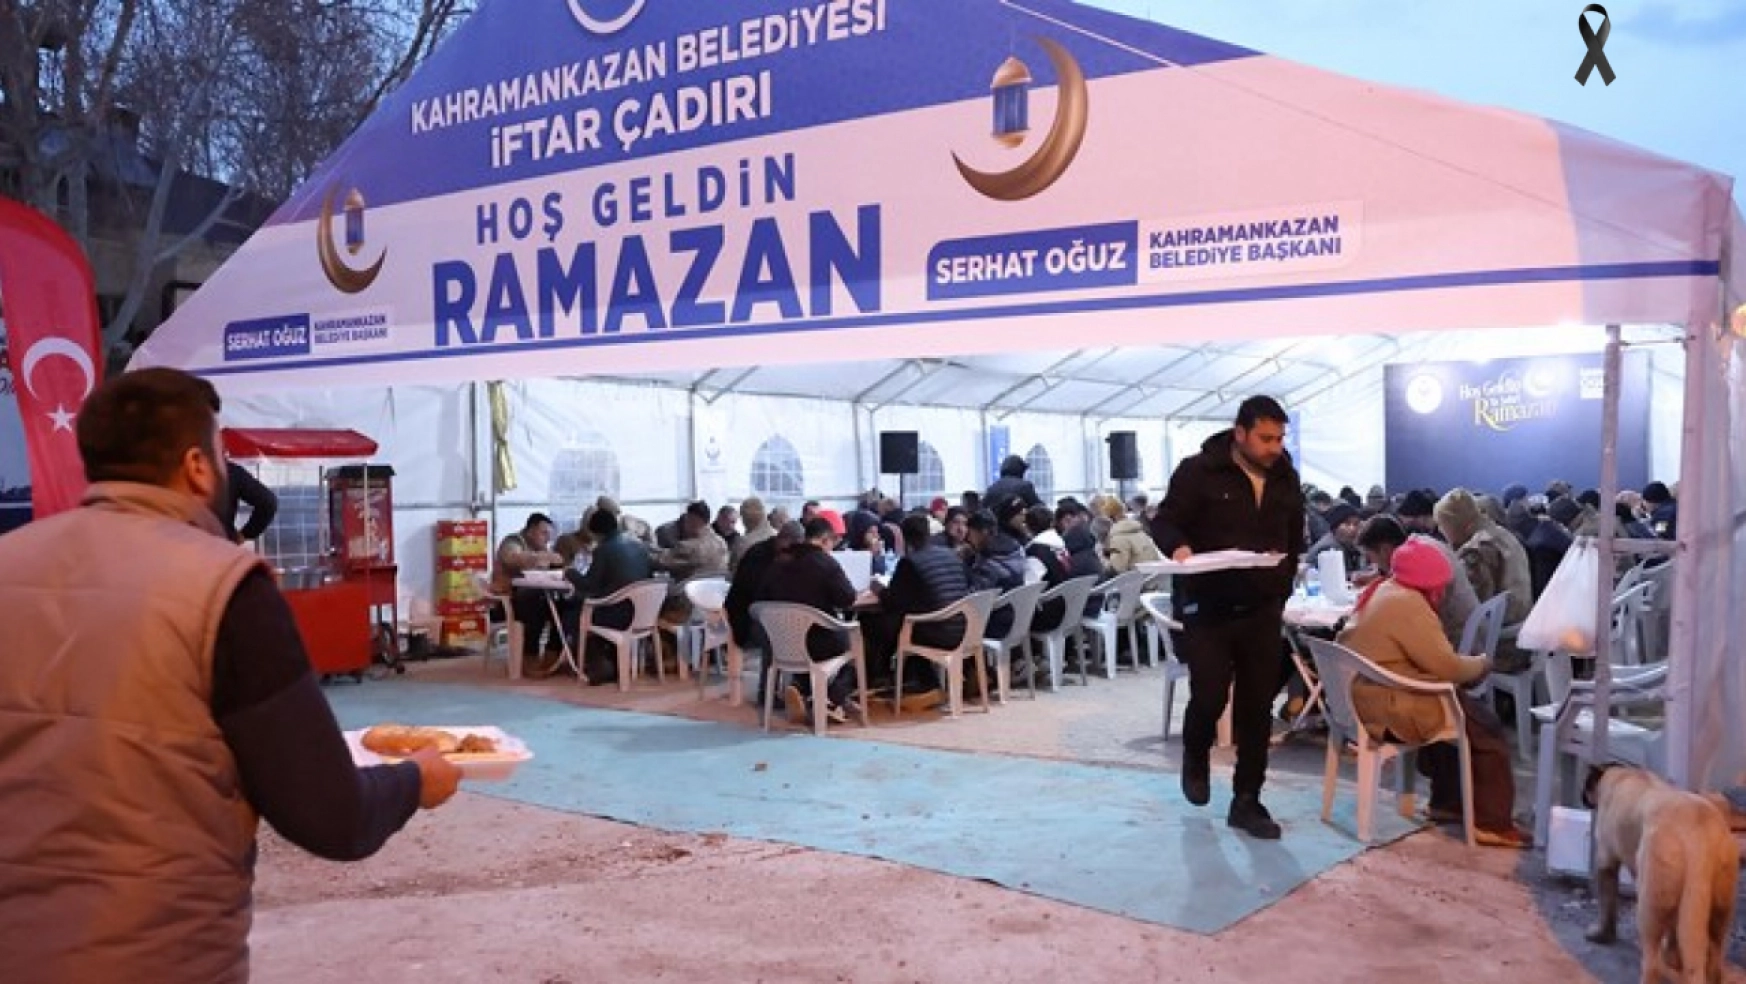 Kahramankazan Belediyesi Doğanşehir'de iftar çadırı kurdu